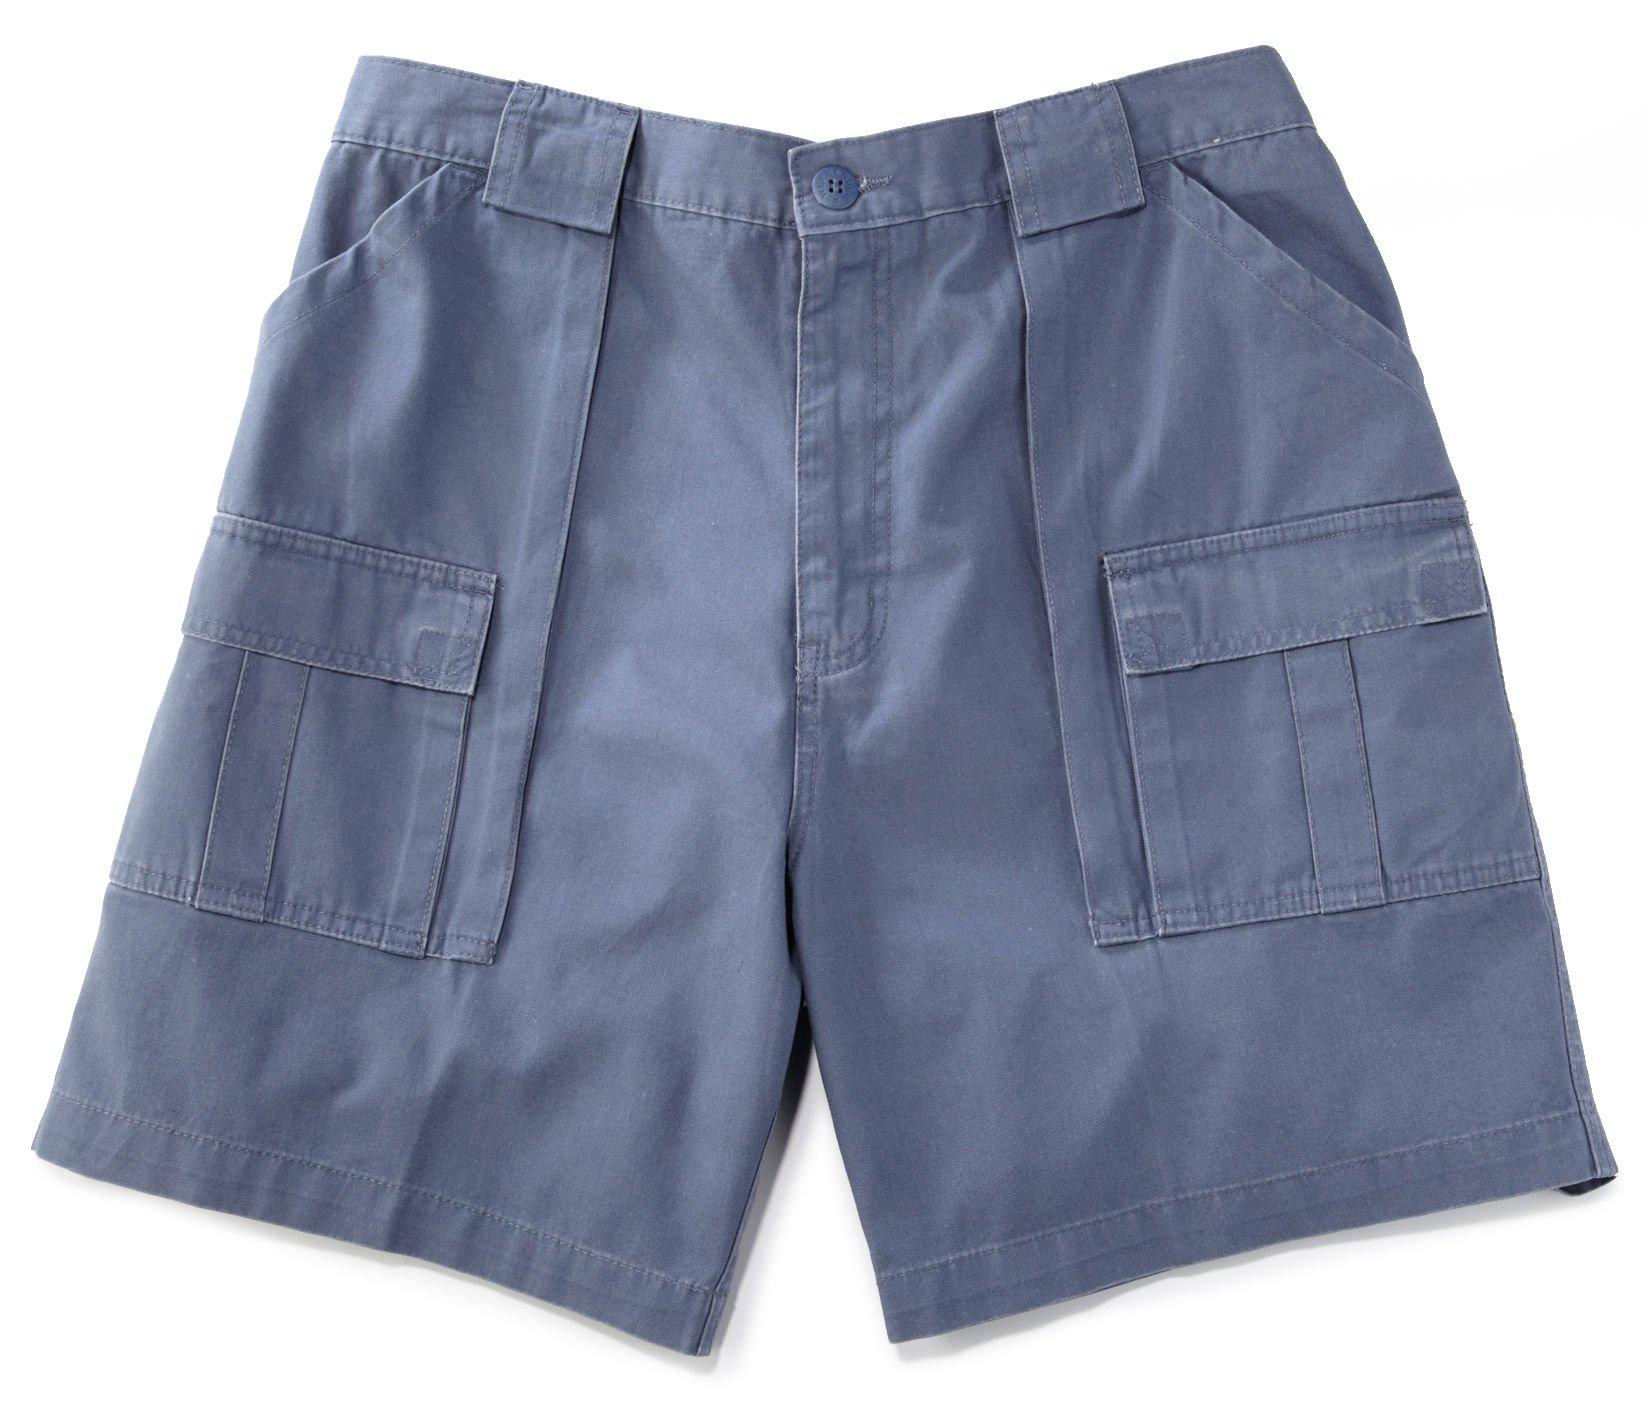 Mens Six Pocket Trader Shorts